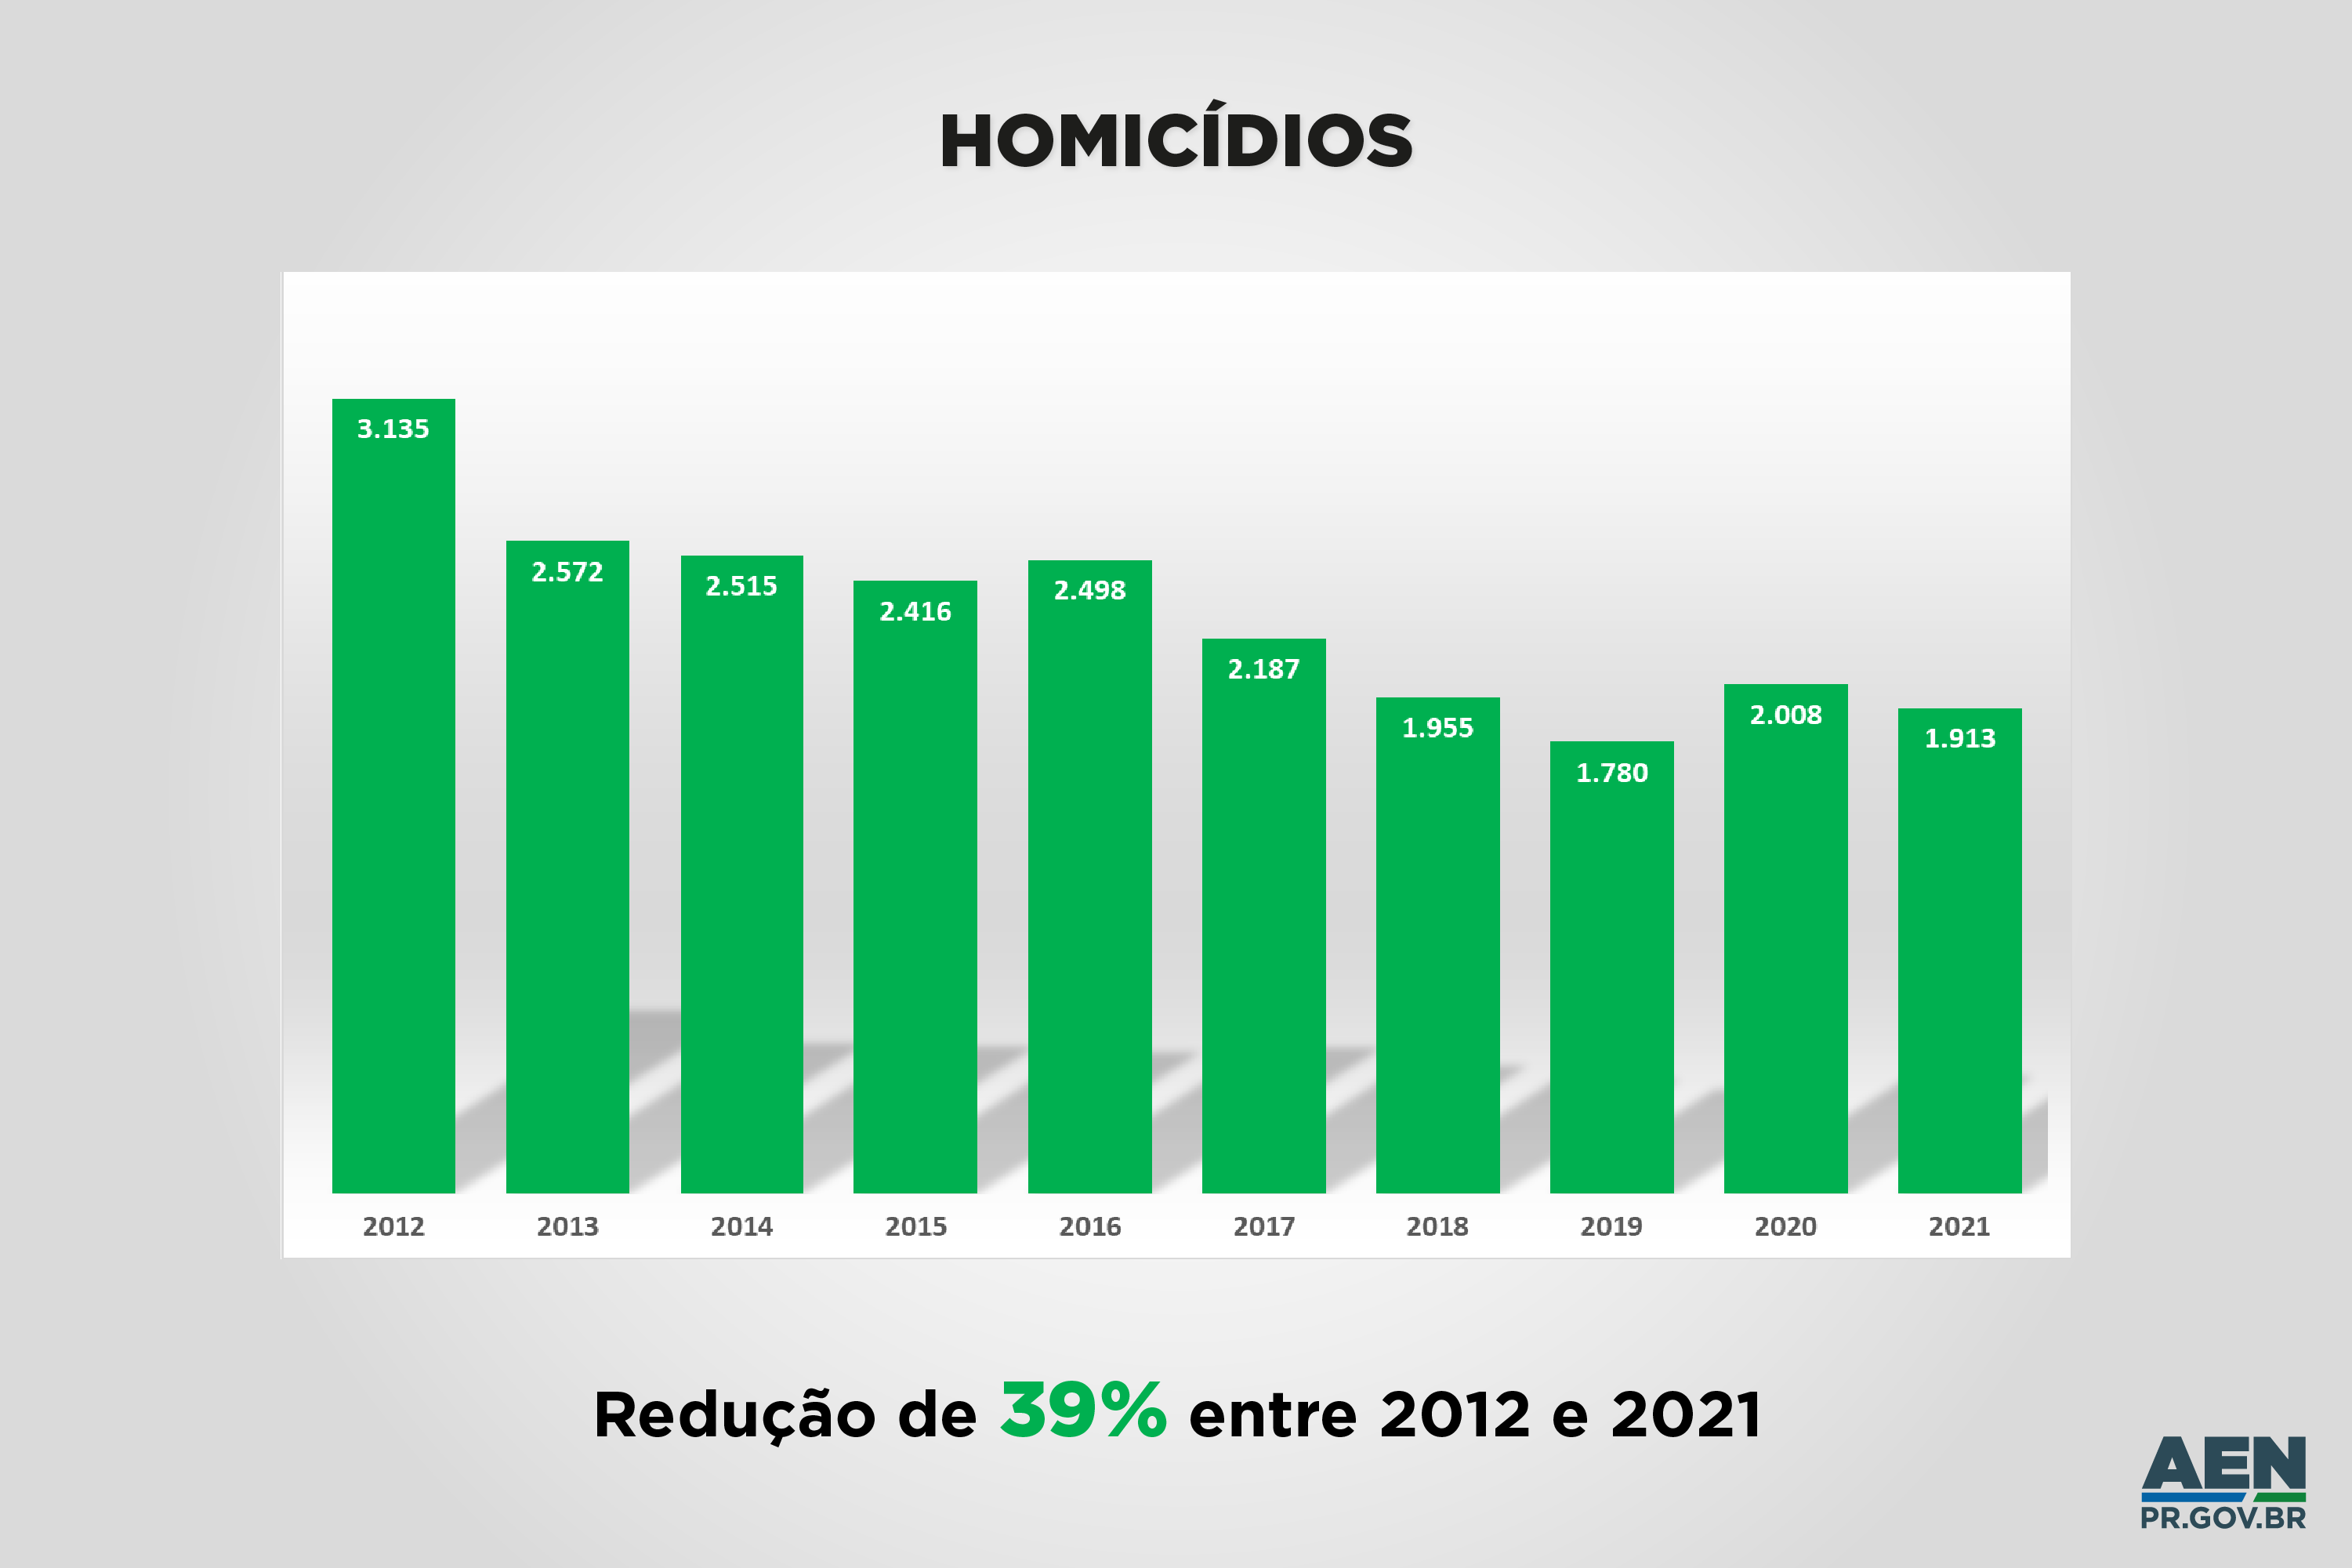 Registro de mortes violentas reduz 40% em uma década no Paraná